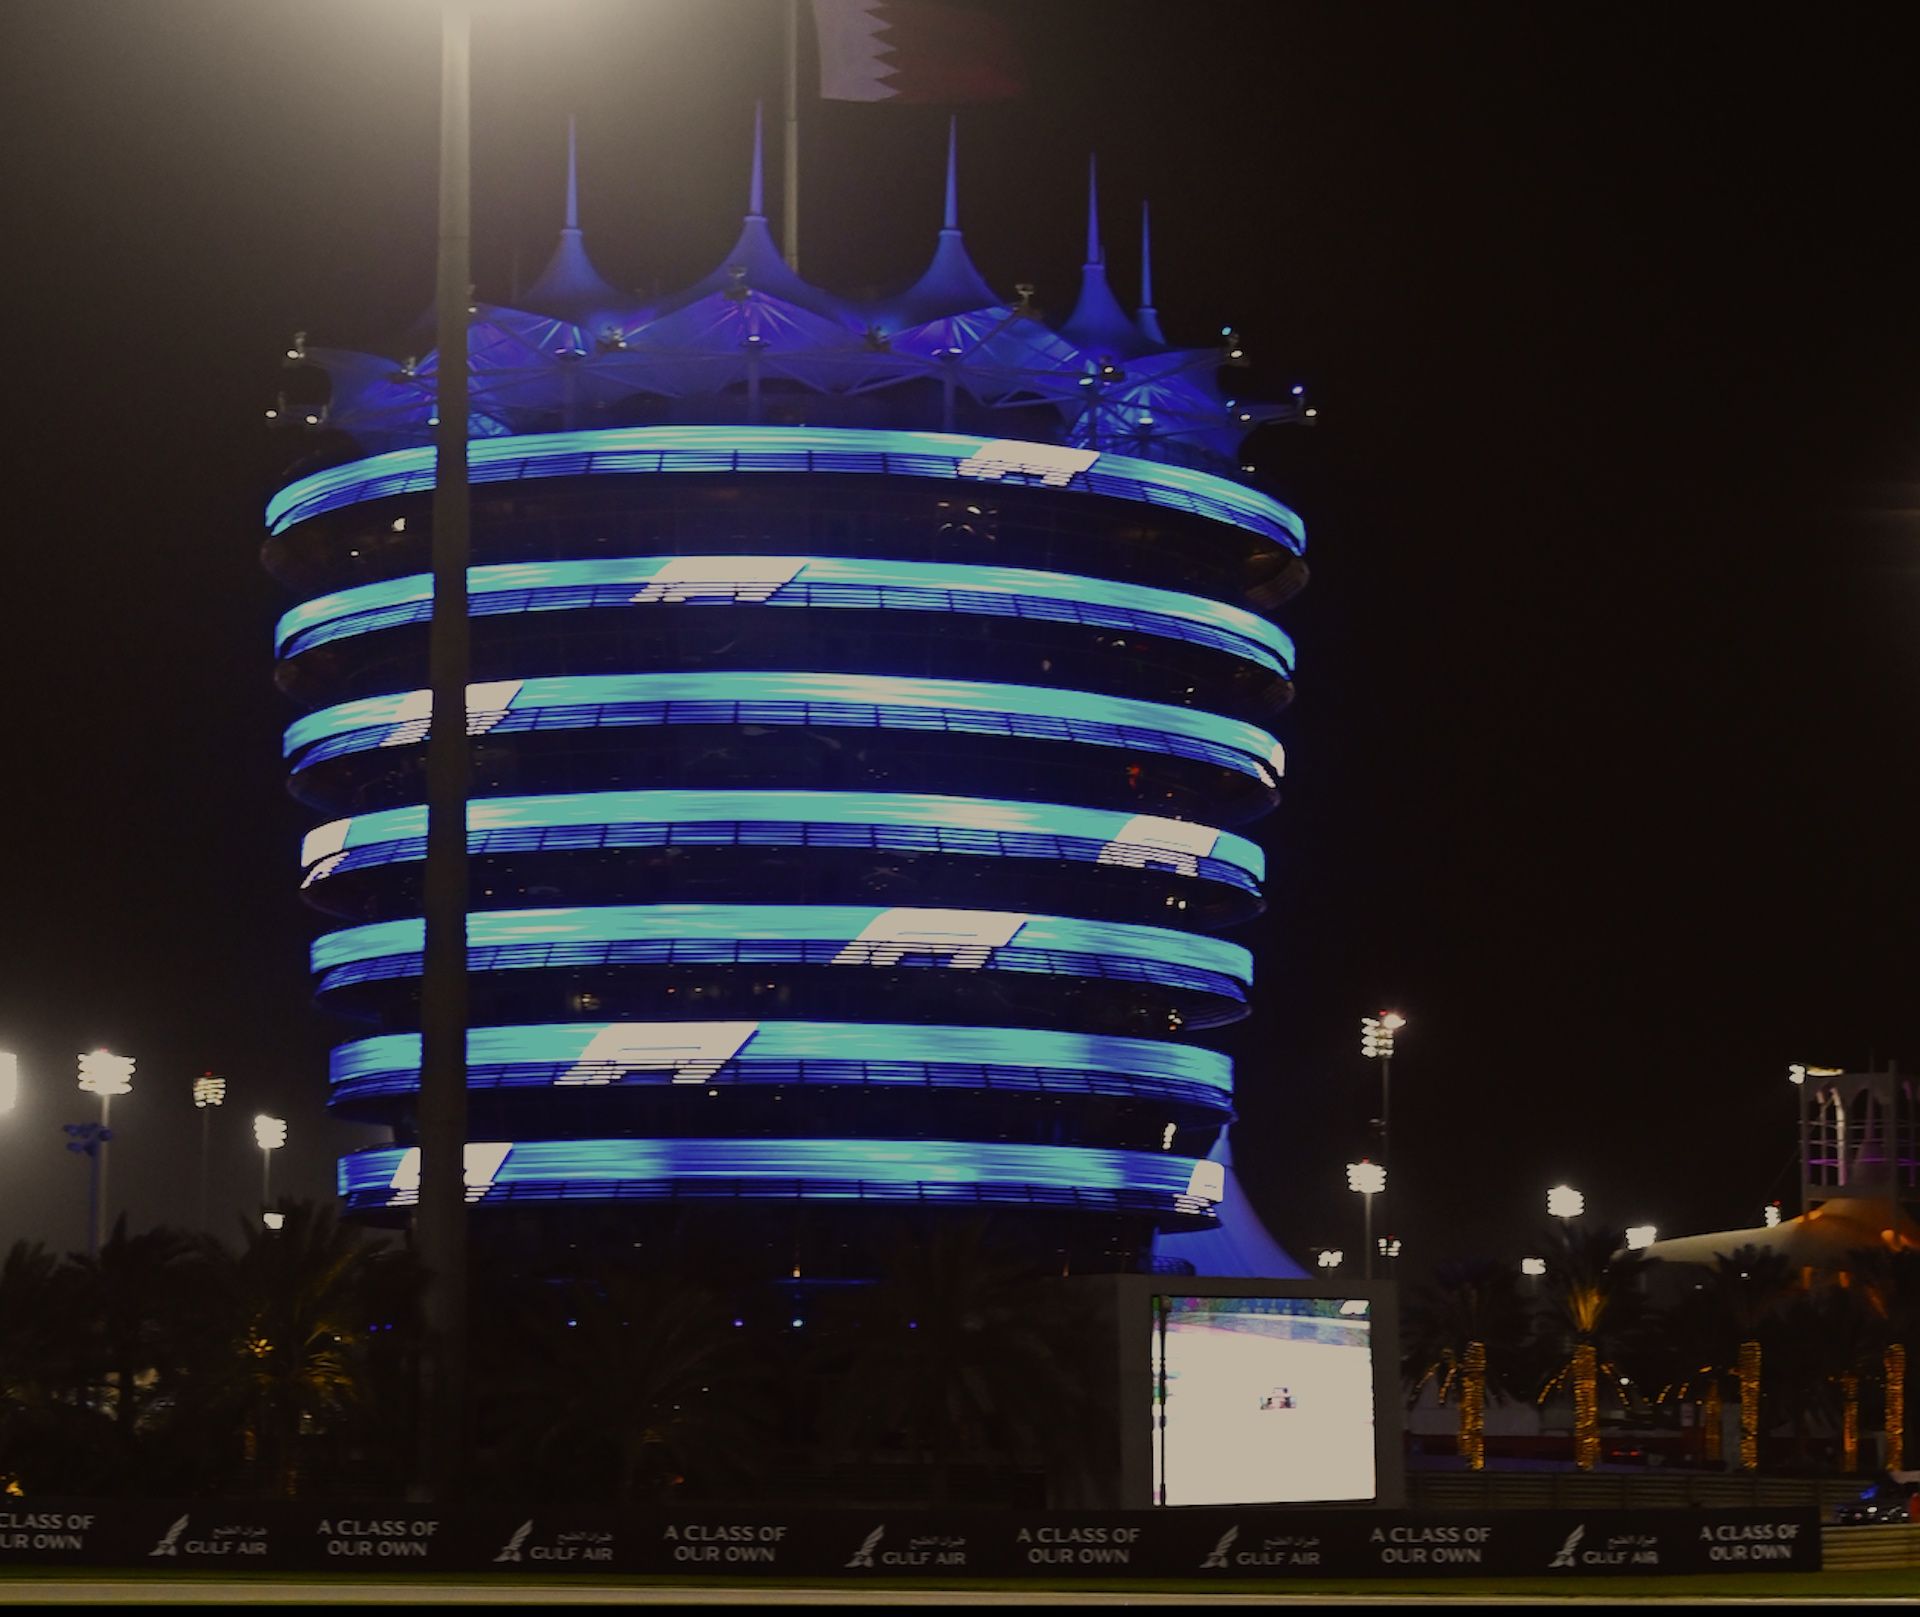 Imagem do guade-reio atrás um telão de led e uma torre circular com leds e no topo bandeira do Bahrain